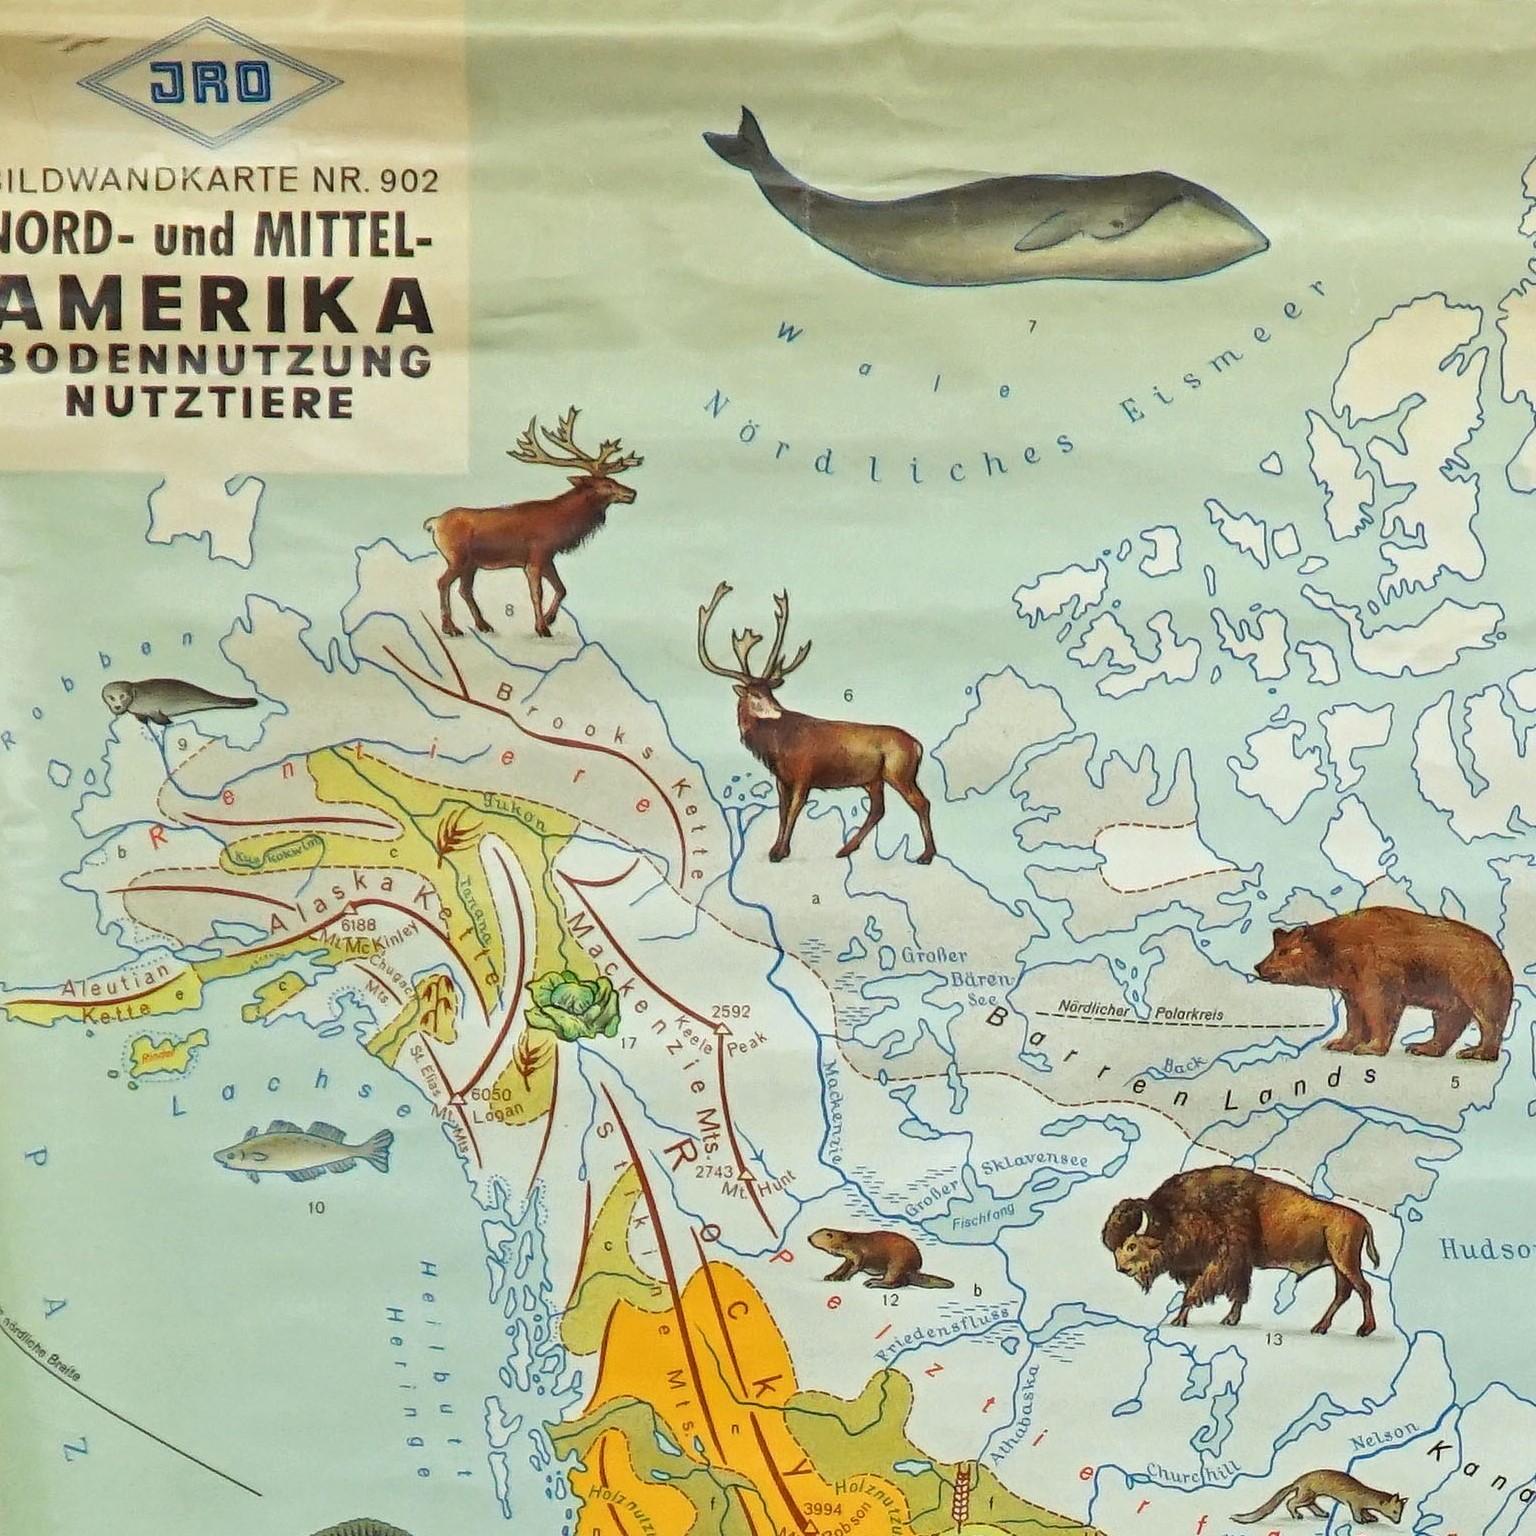 Die aufrollbare Vintage-Karte von Nord- und Mittelamerika zeigt Landnutzung und Viehbestand. Veröffentlicht von JRO. Farbenfroher Druck auf mit Leinwand verstärktem Papier.
Abmessungen:
Breite 90cm (35.43 inch)
Höhe 120cm (47.24 inch)

Die